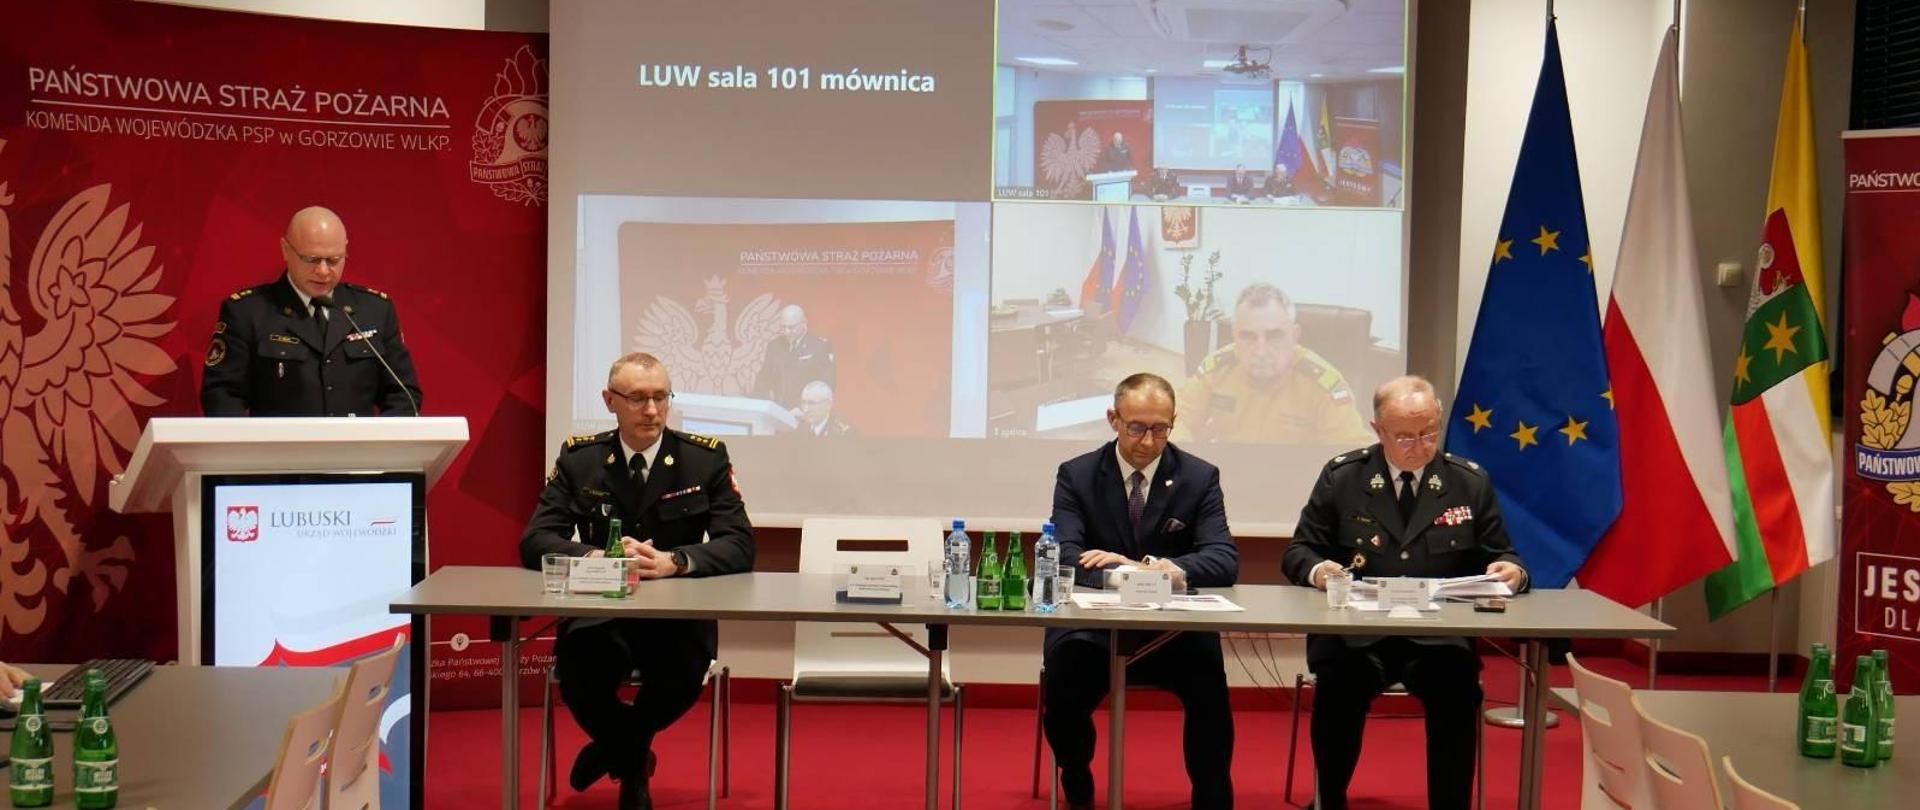 Przedstawiciele województwa lubuskiego przy stole konferencyjnym, w tle łączenie wideo